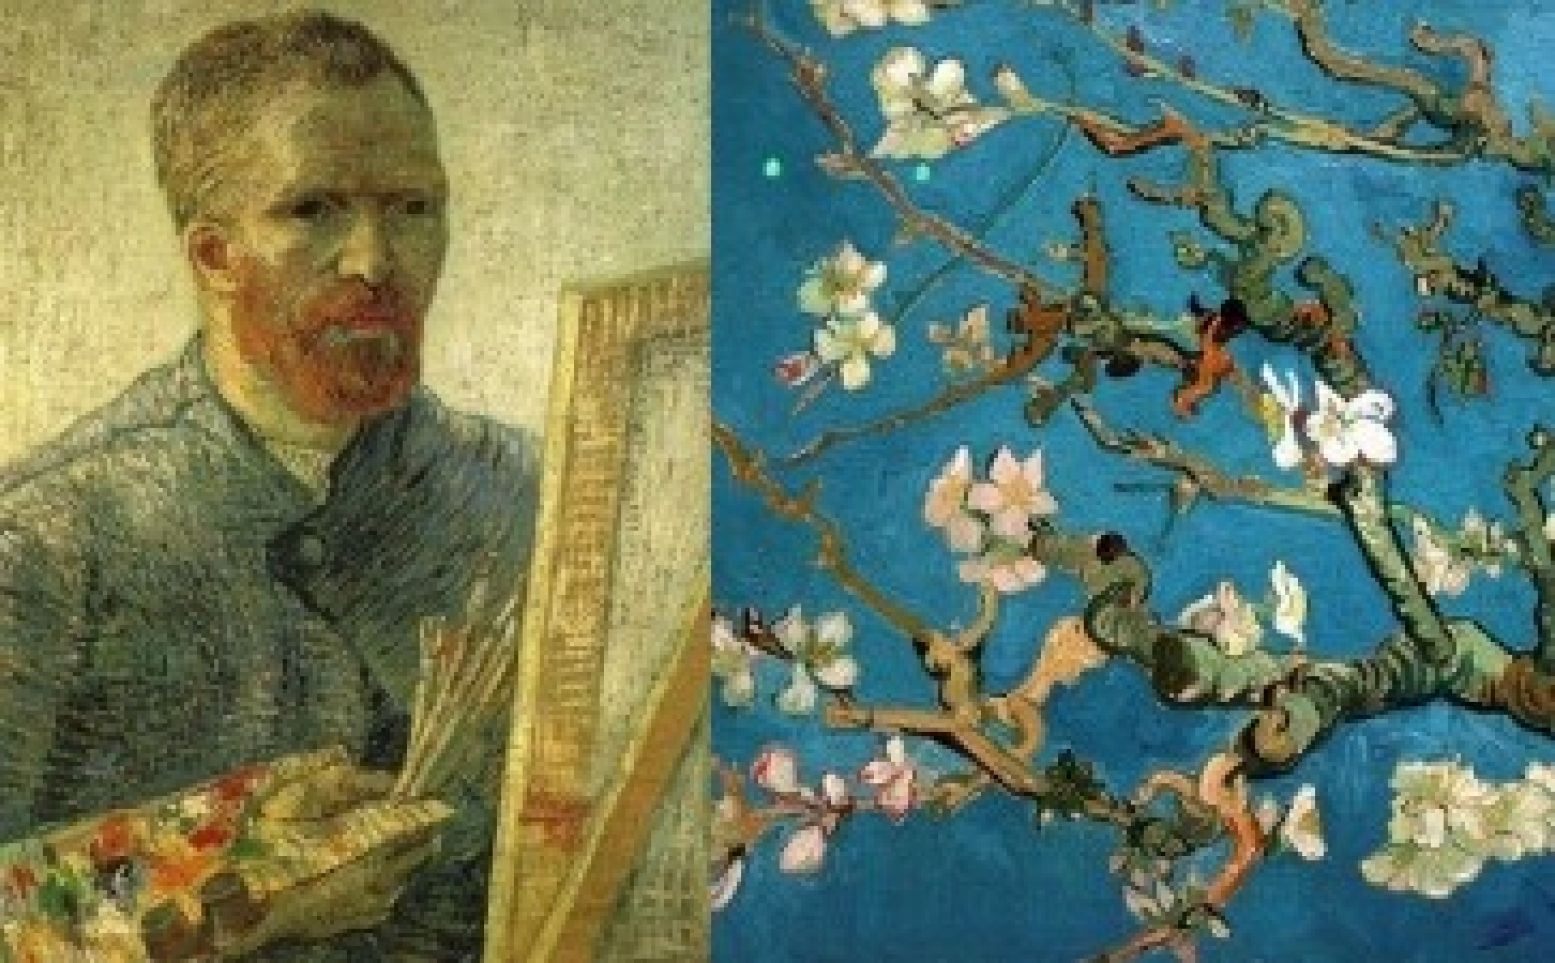 Ontmoet Vincent van Gogh in 2015!